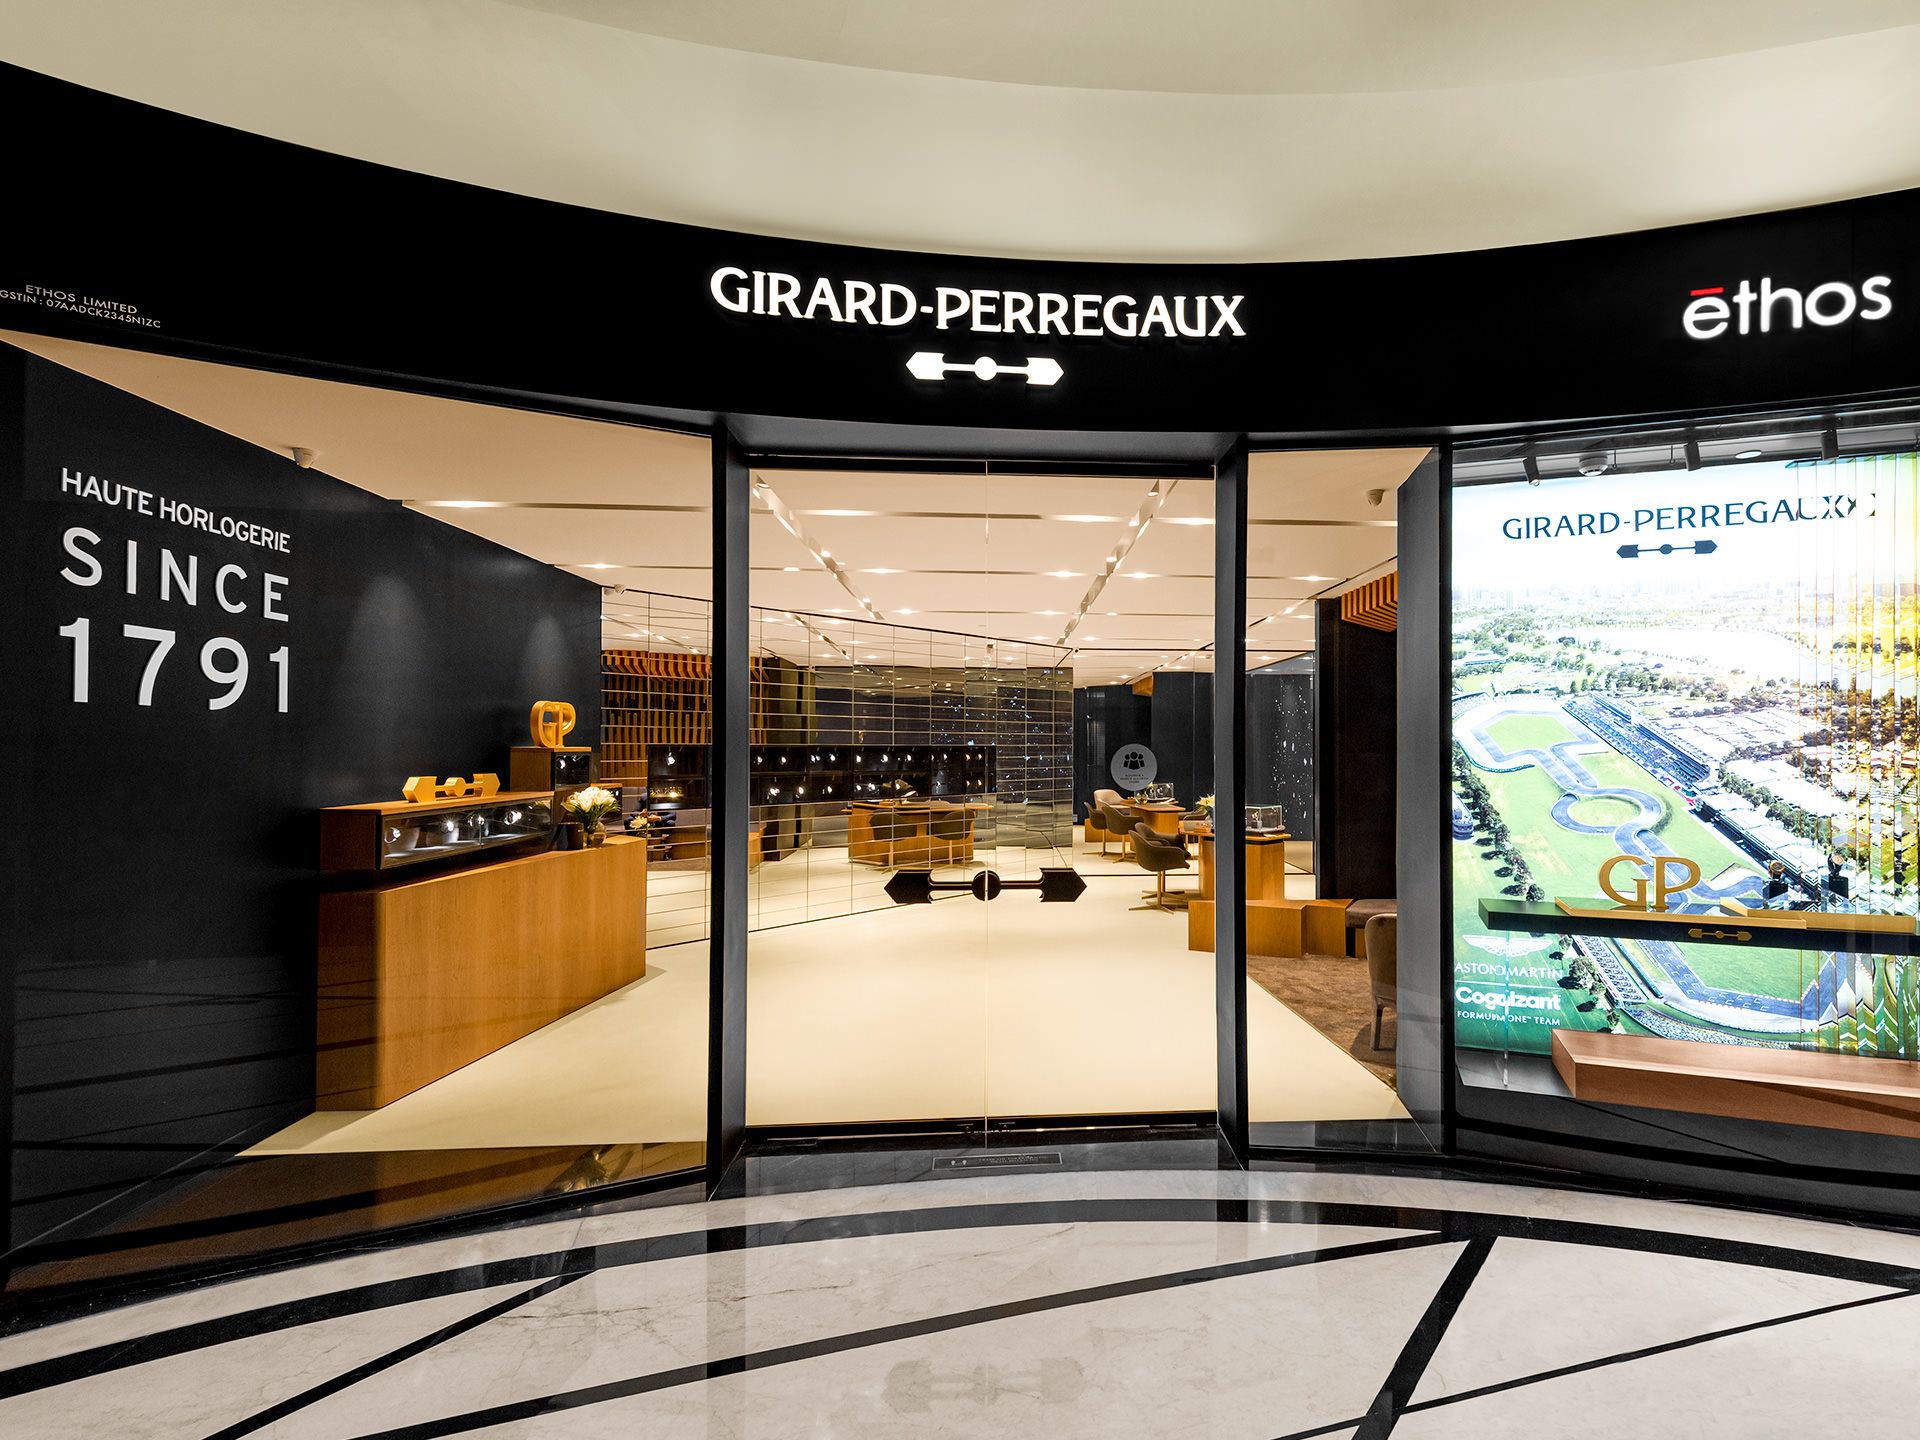 Girard Perregaux Boutique - Ethos Watches